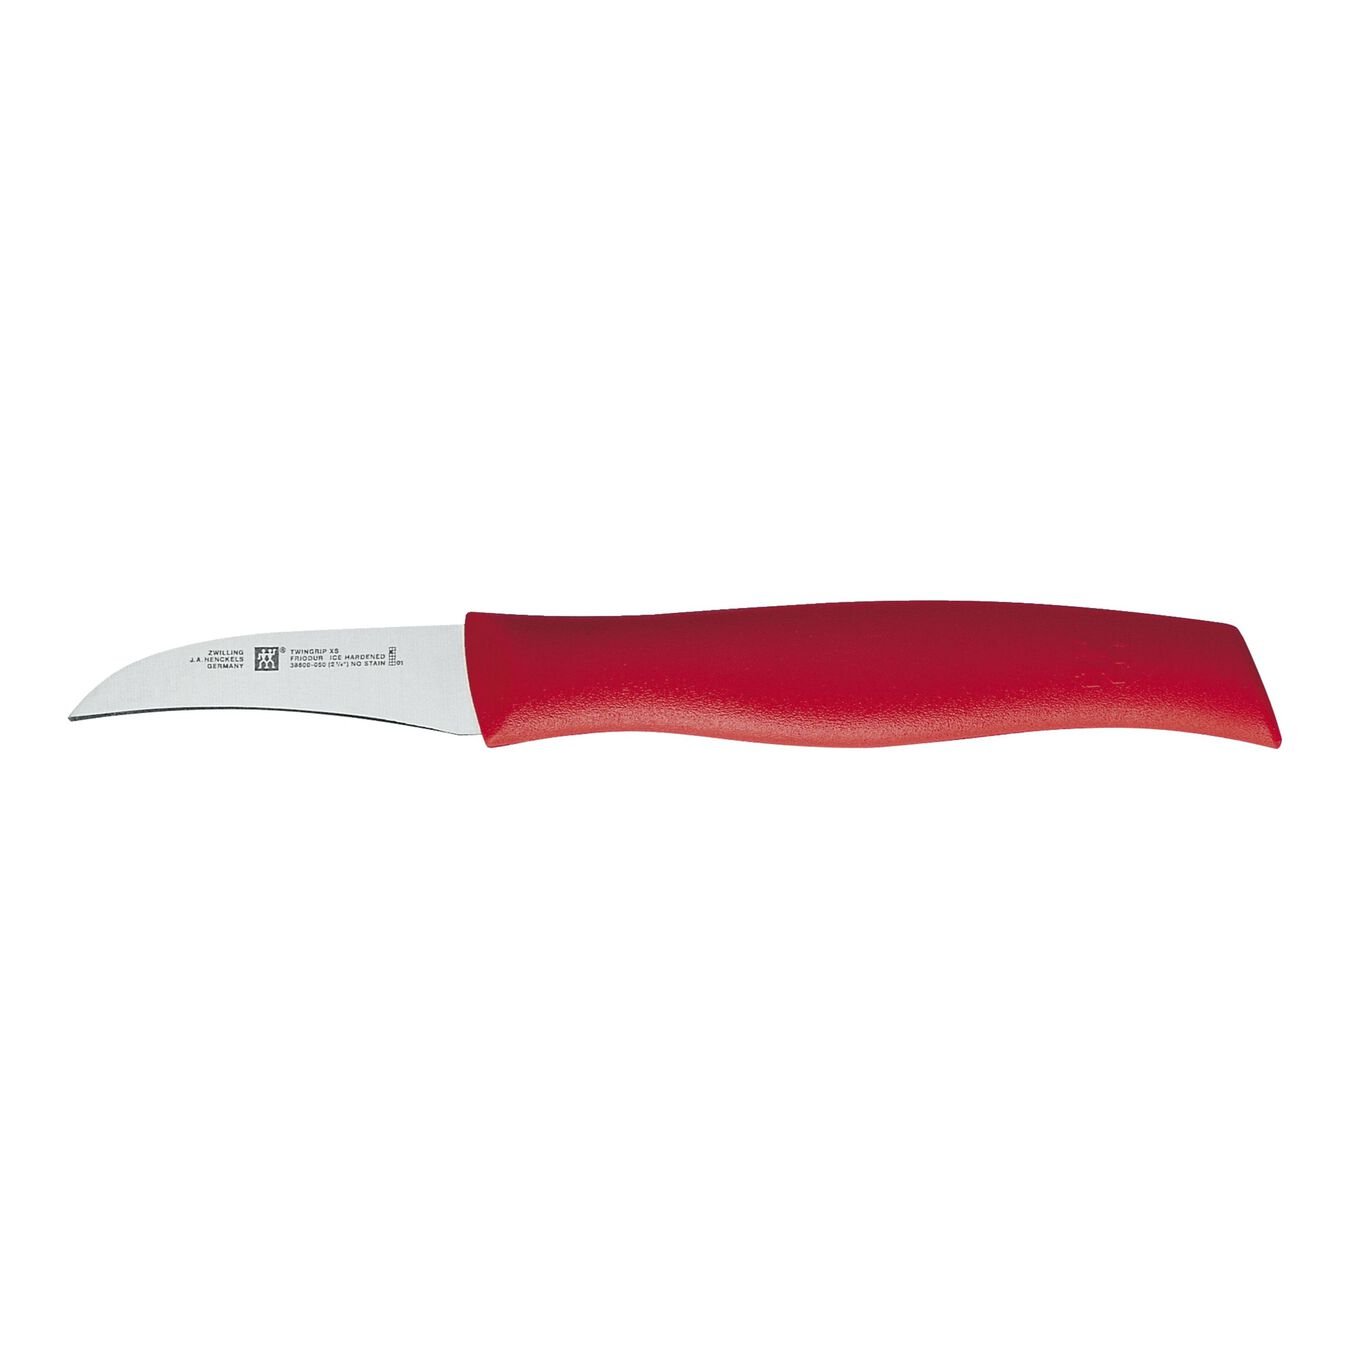 Couteau à éplucher 5 cm, Rouge,,large 1